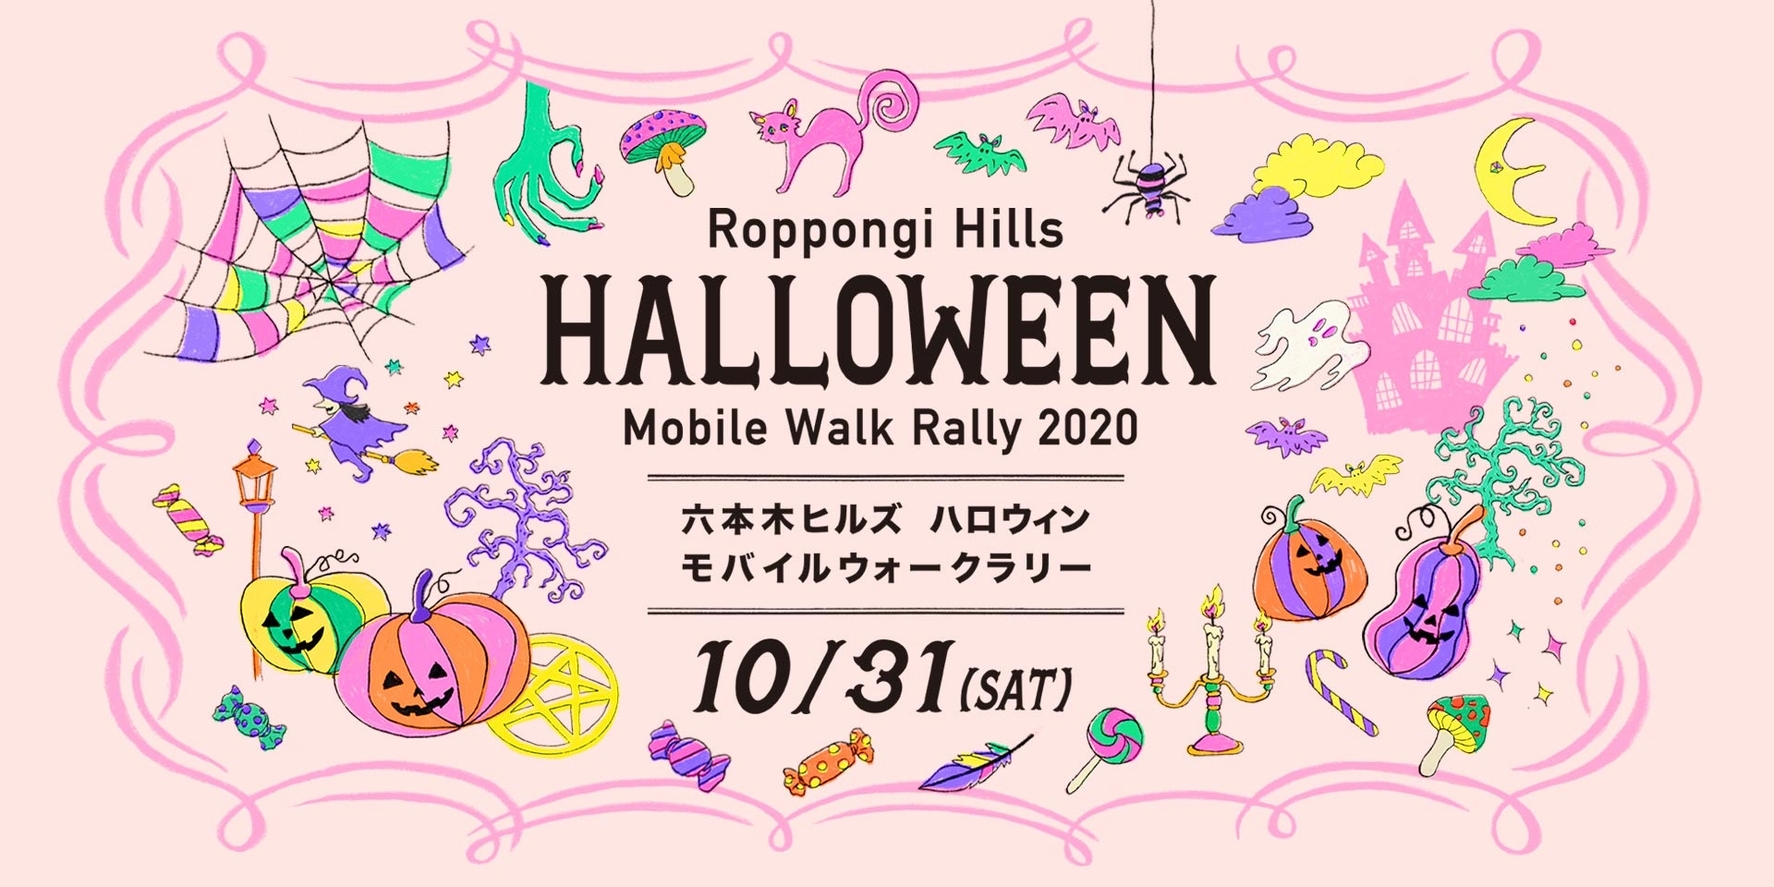 Tokyo’s Best Halloween Events For 2020 | Tokyo Weekender